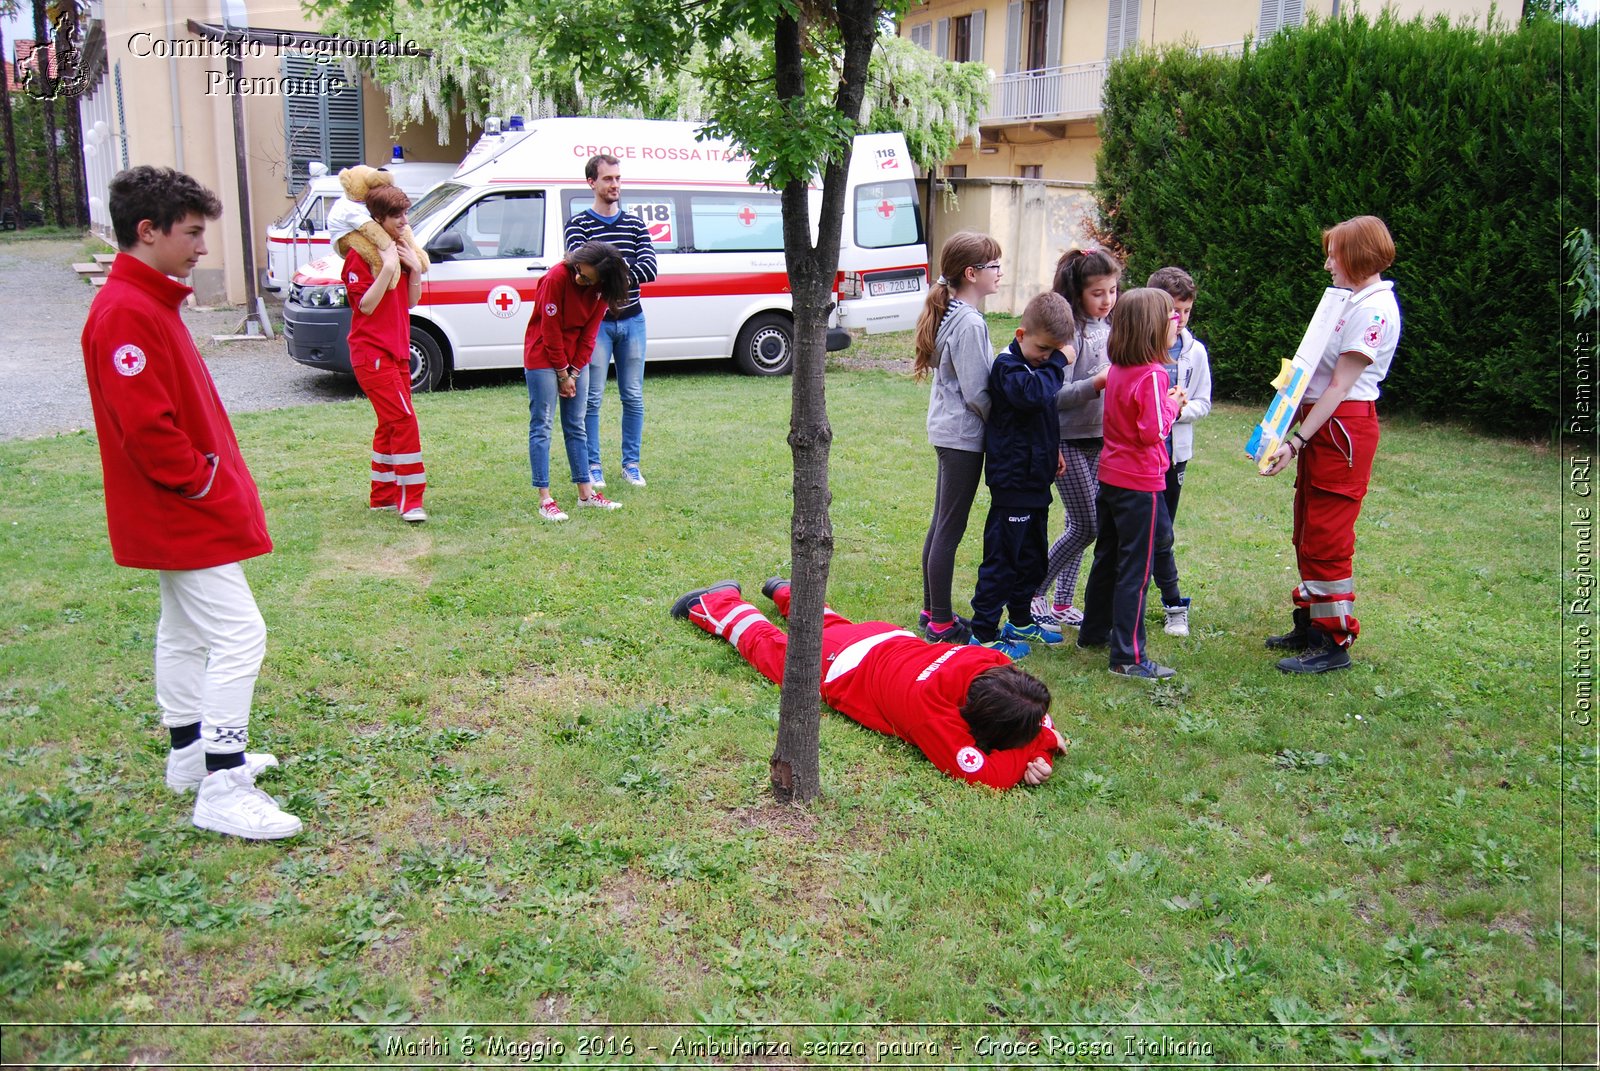 Mathi 8 Maggio 2016 - Ambulanza senza paura - Croce Rossa Italiana- Comitato Regionale del Piemonte